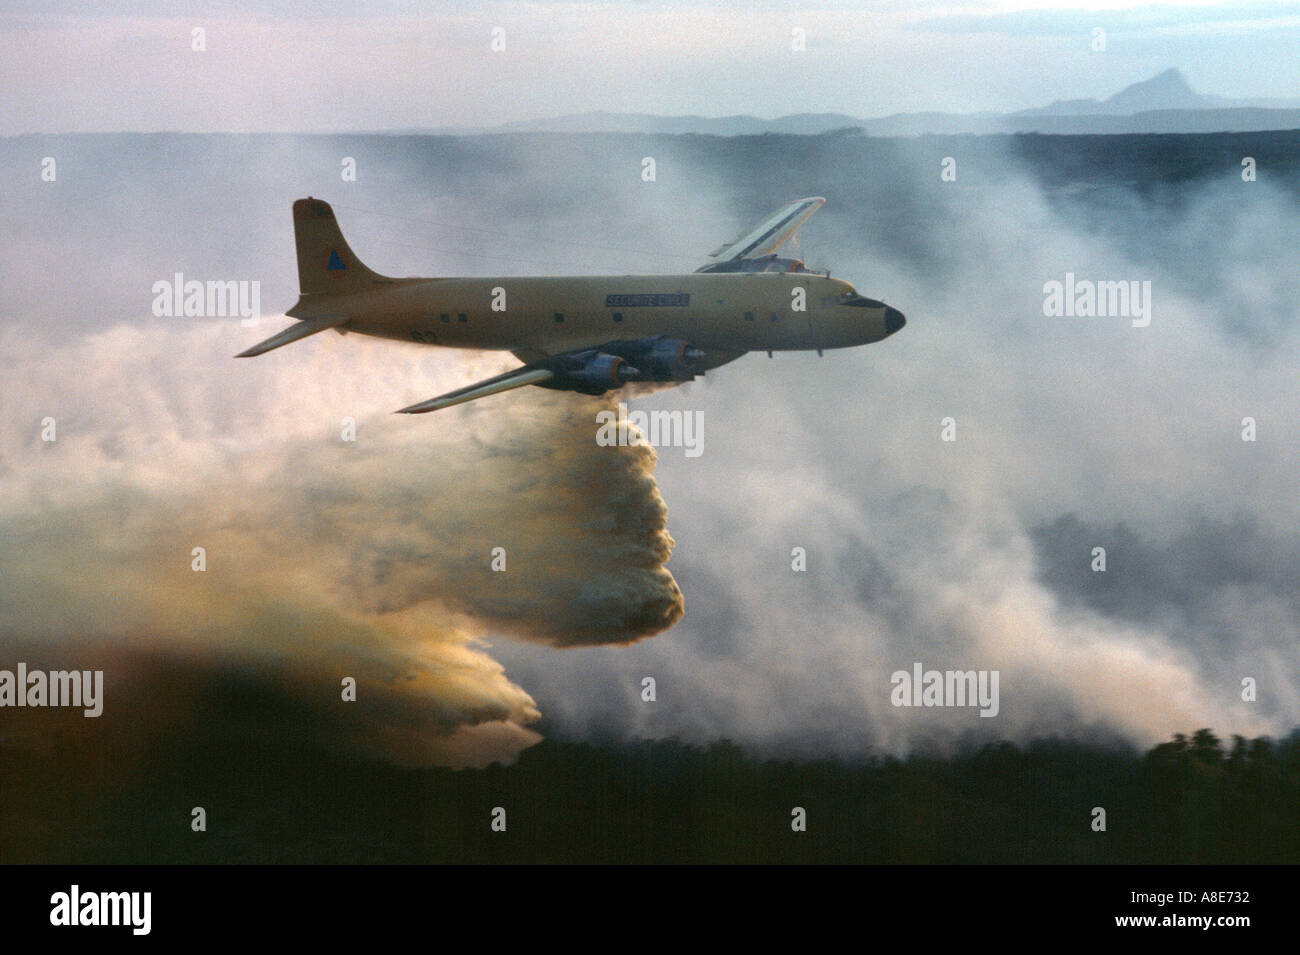 Vue aérienne d'un Douglas DC-6B avion bombardier d'eau de lutte contre l'abandon au feu sur un incendie de forêt, fumée, Provence, France, Europe, Banque D'Images